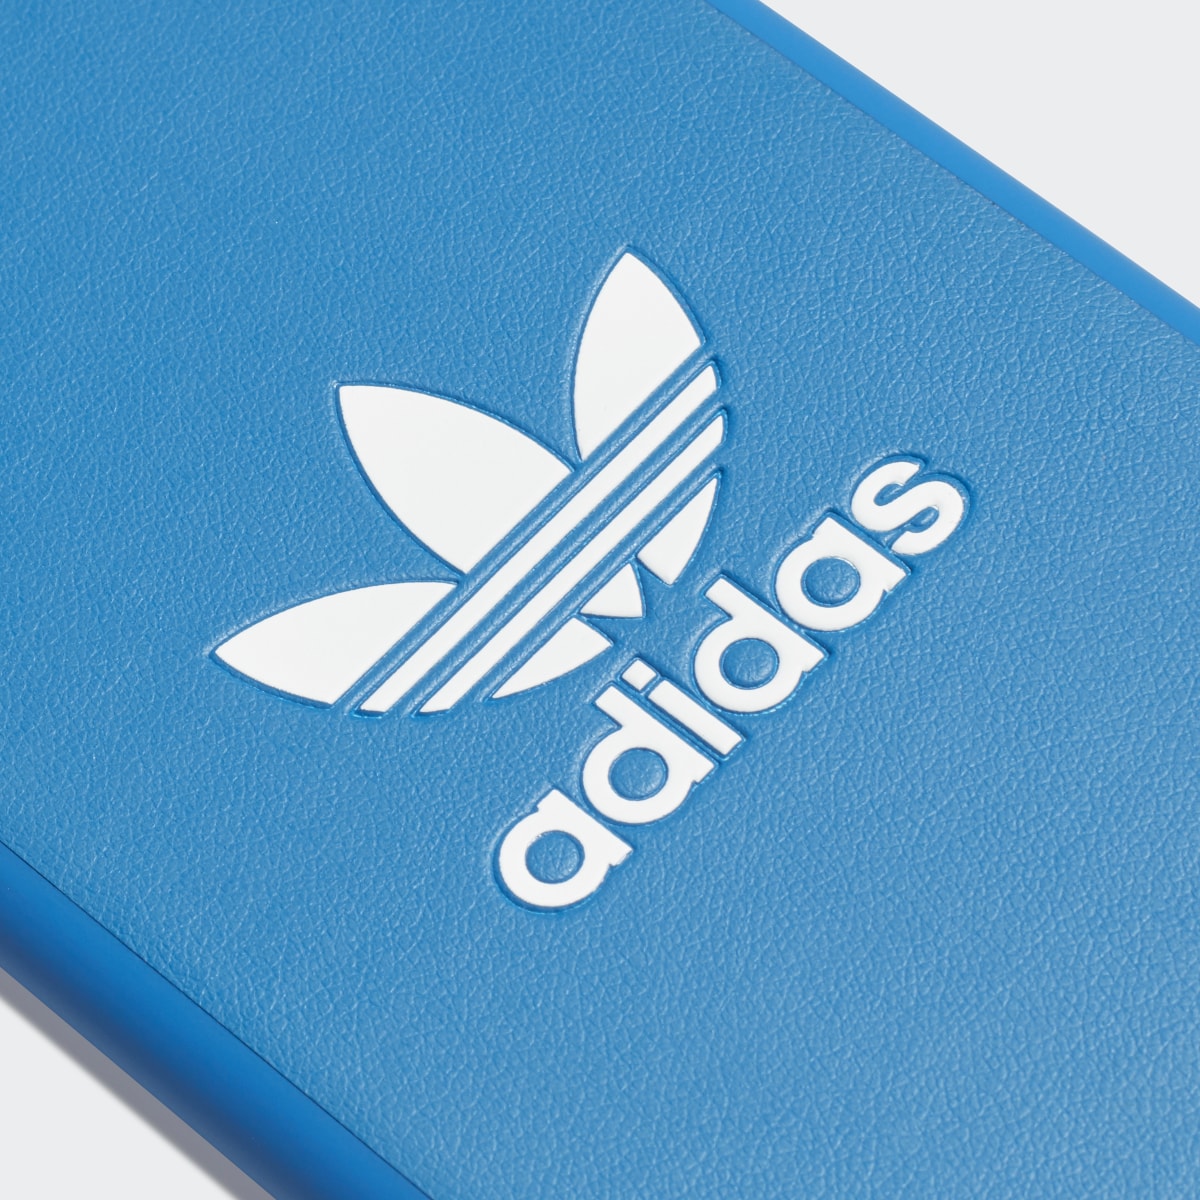 Adidas Basic Logo Case iPhone X. 6